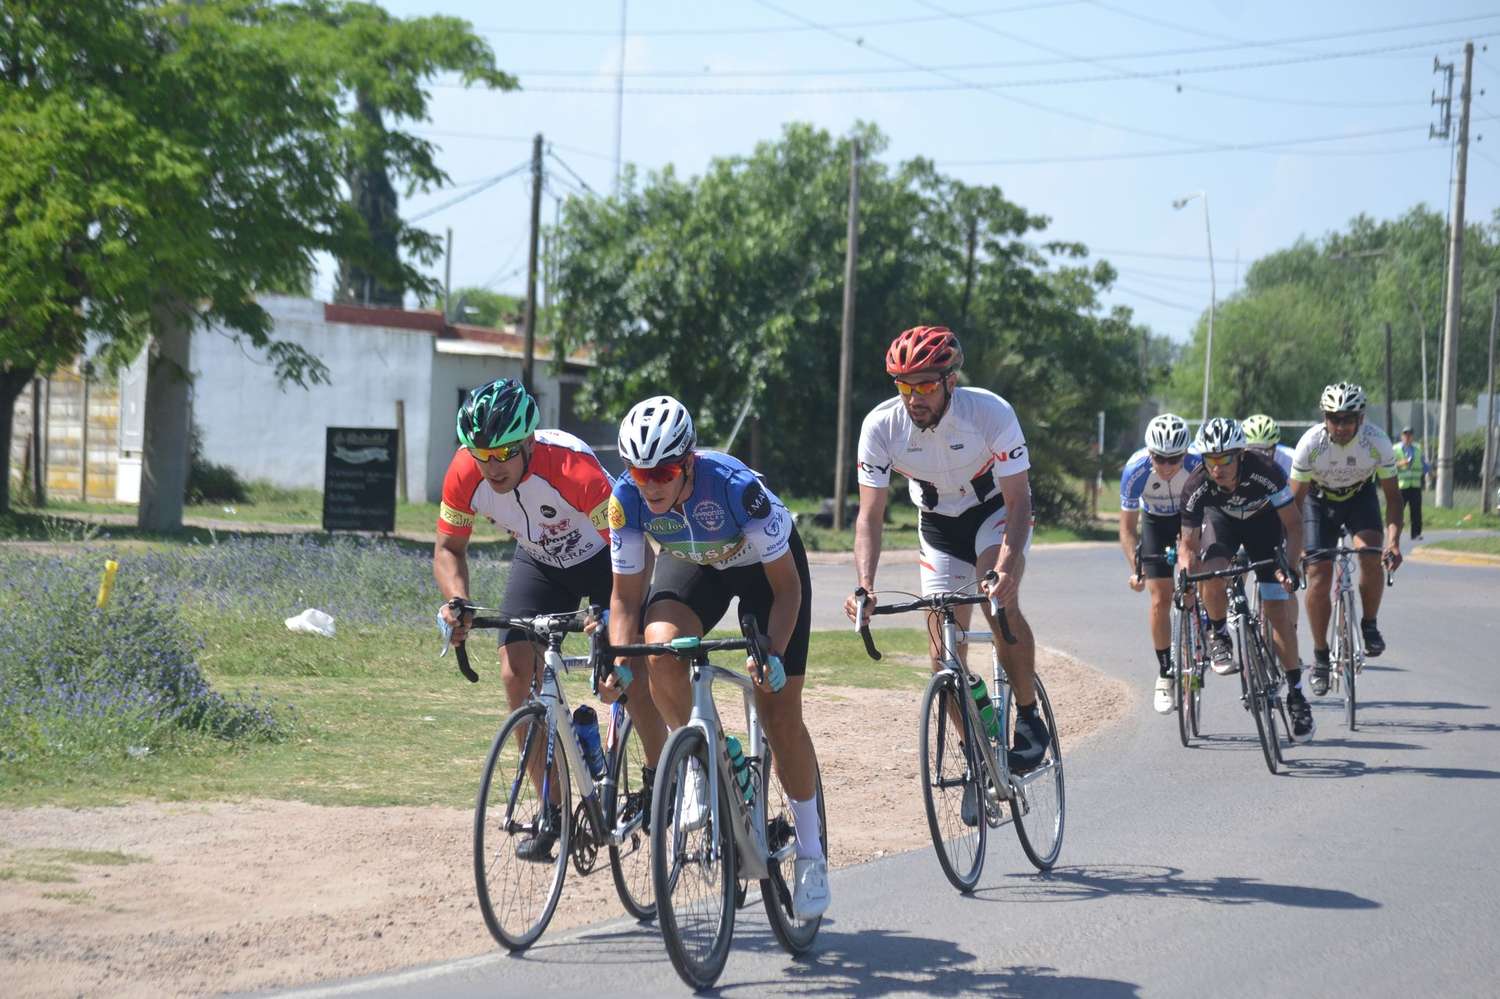 Tras el festival pedalístico del sábado hoy nos visita una delegación ciclistica con fines benéficos.